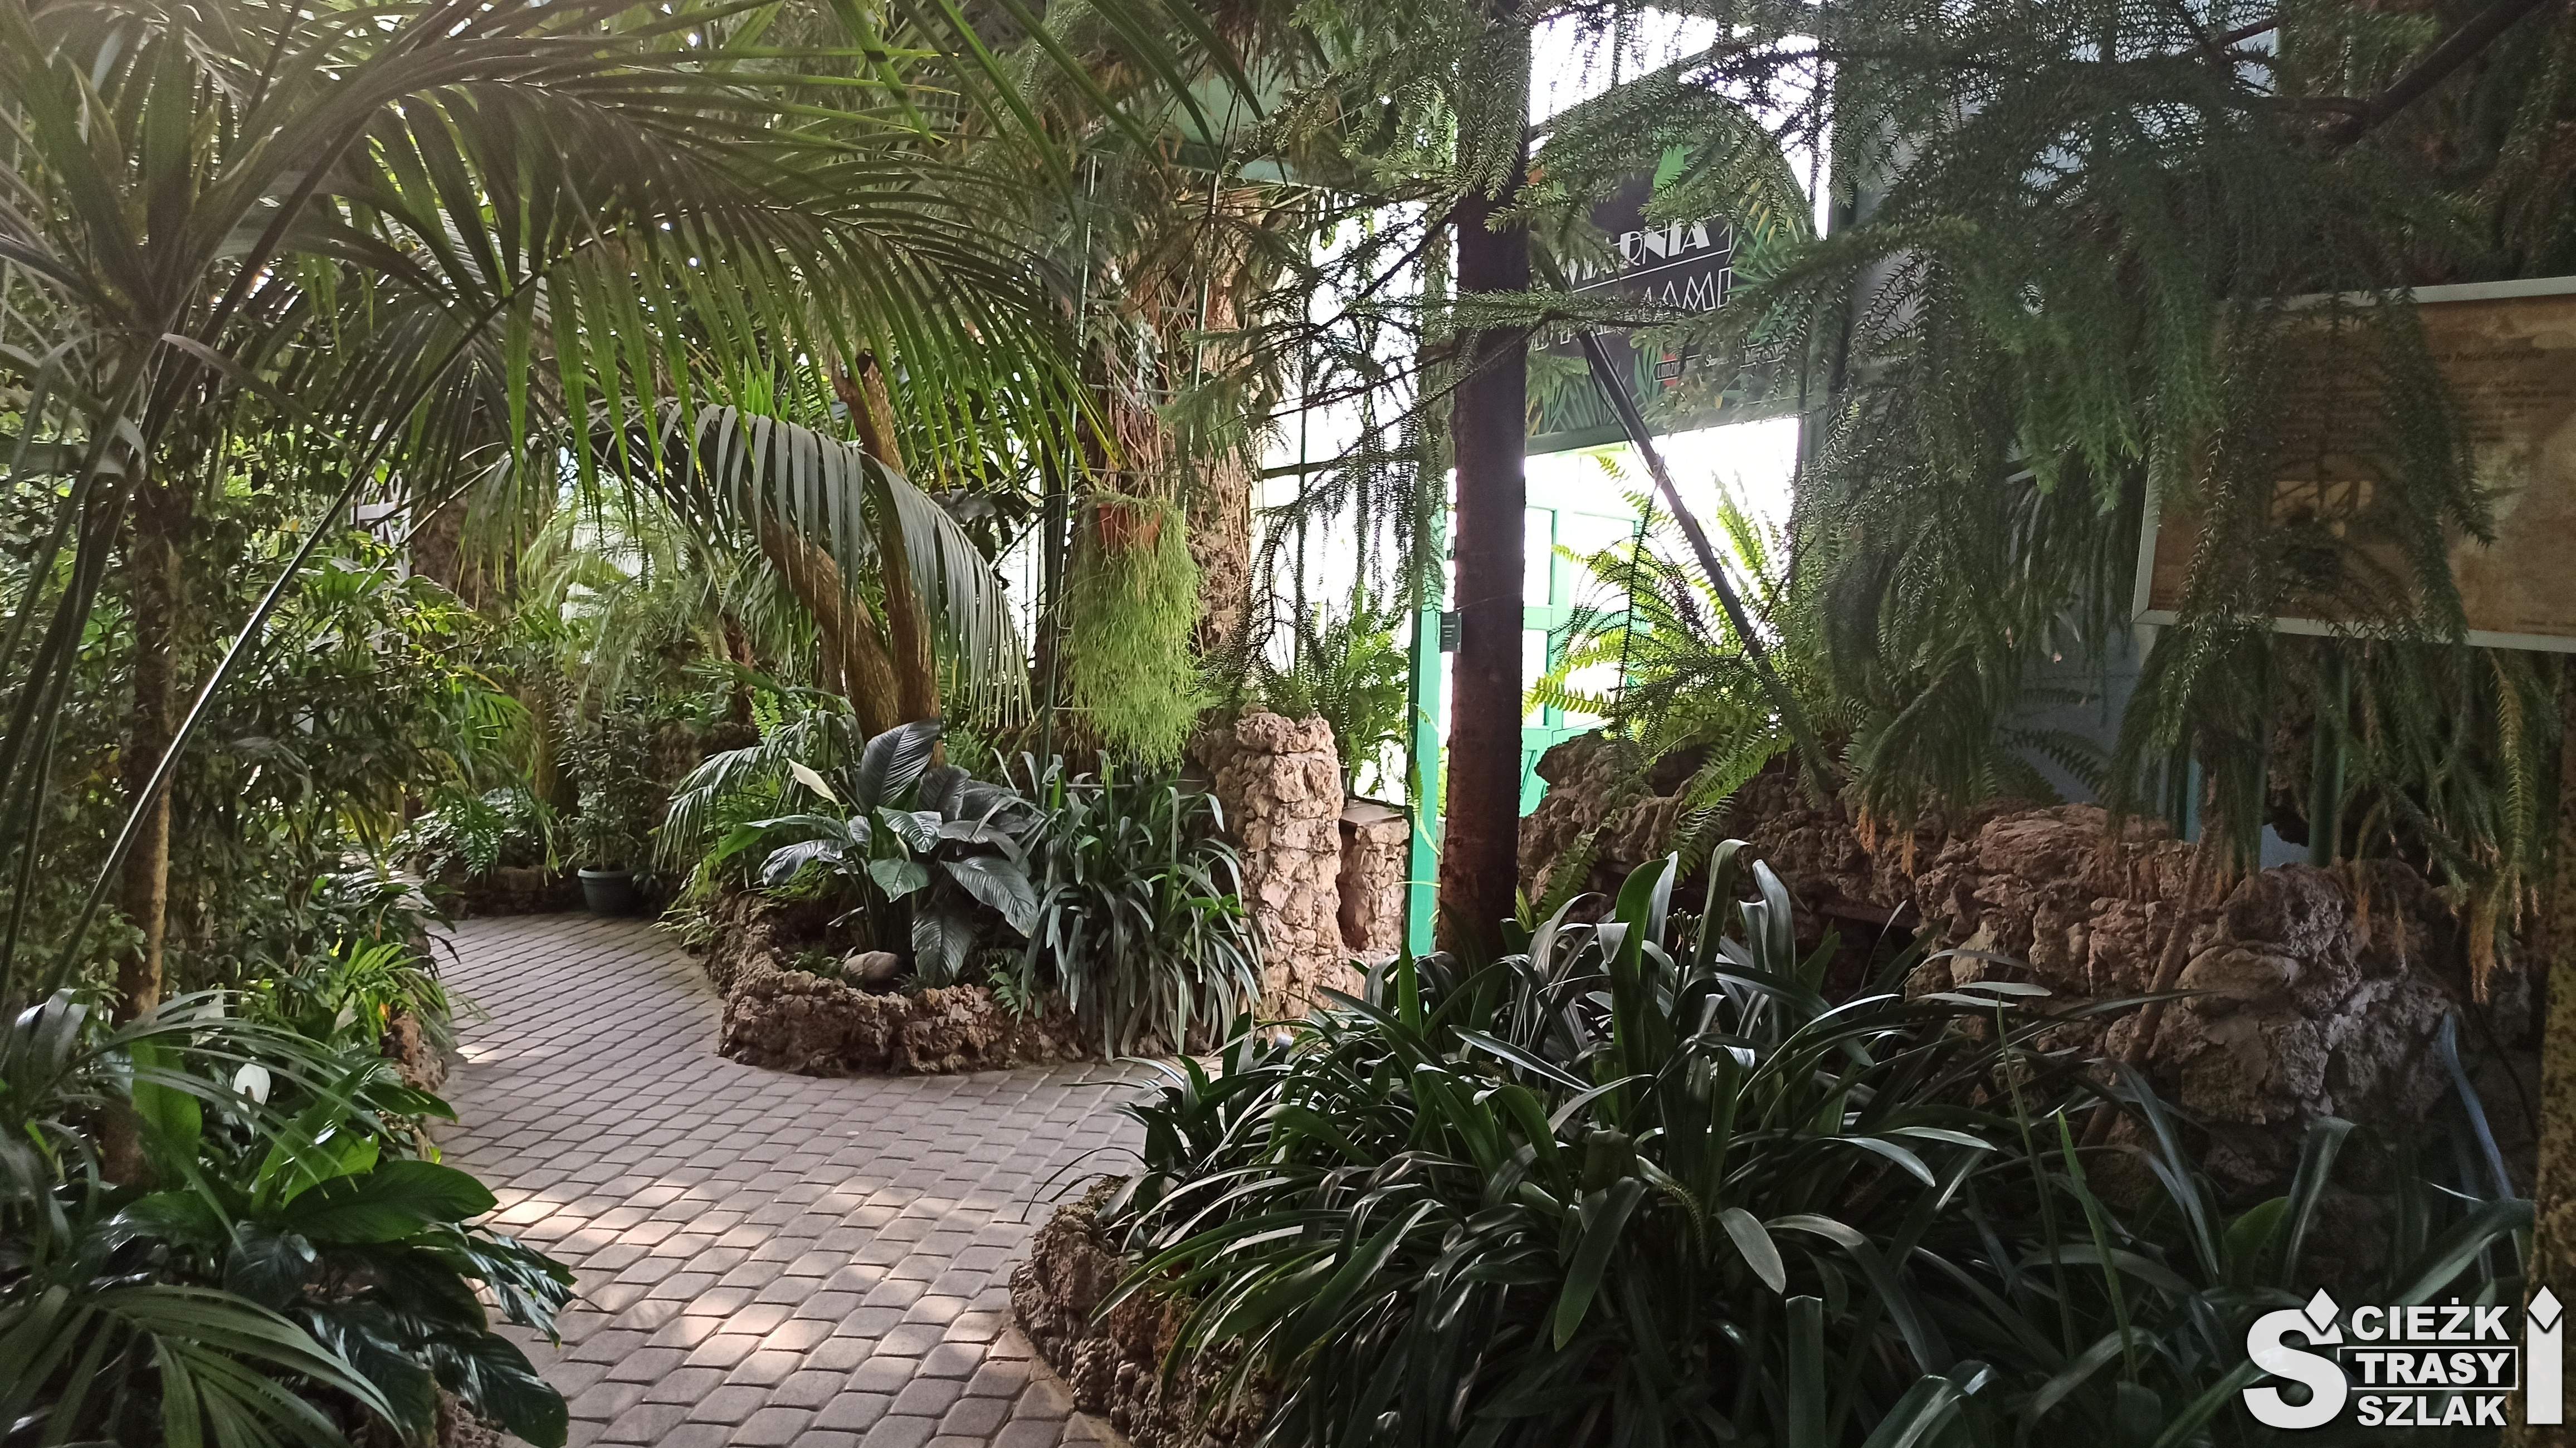 Palmy i inne rośliny tropikalne w szklarni należącej do Palmiarni Wałbrzyskiej